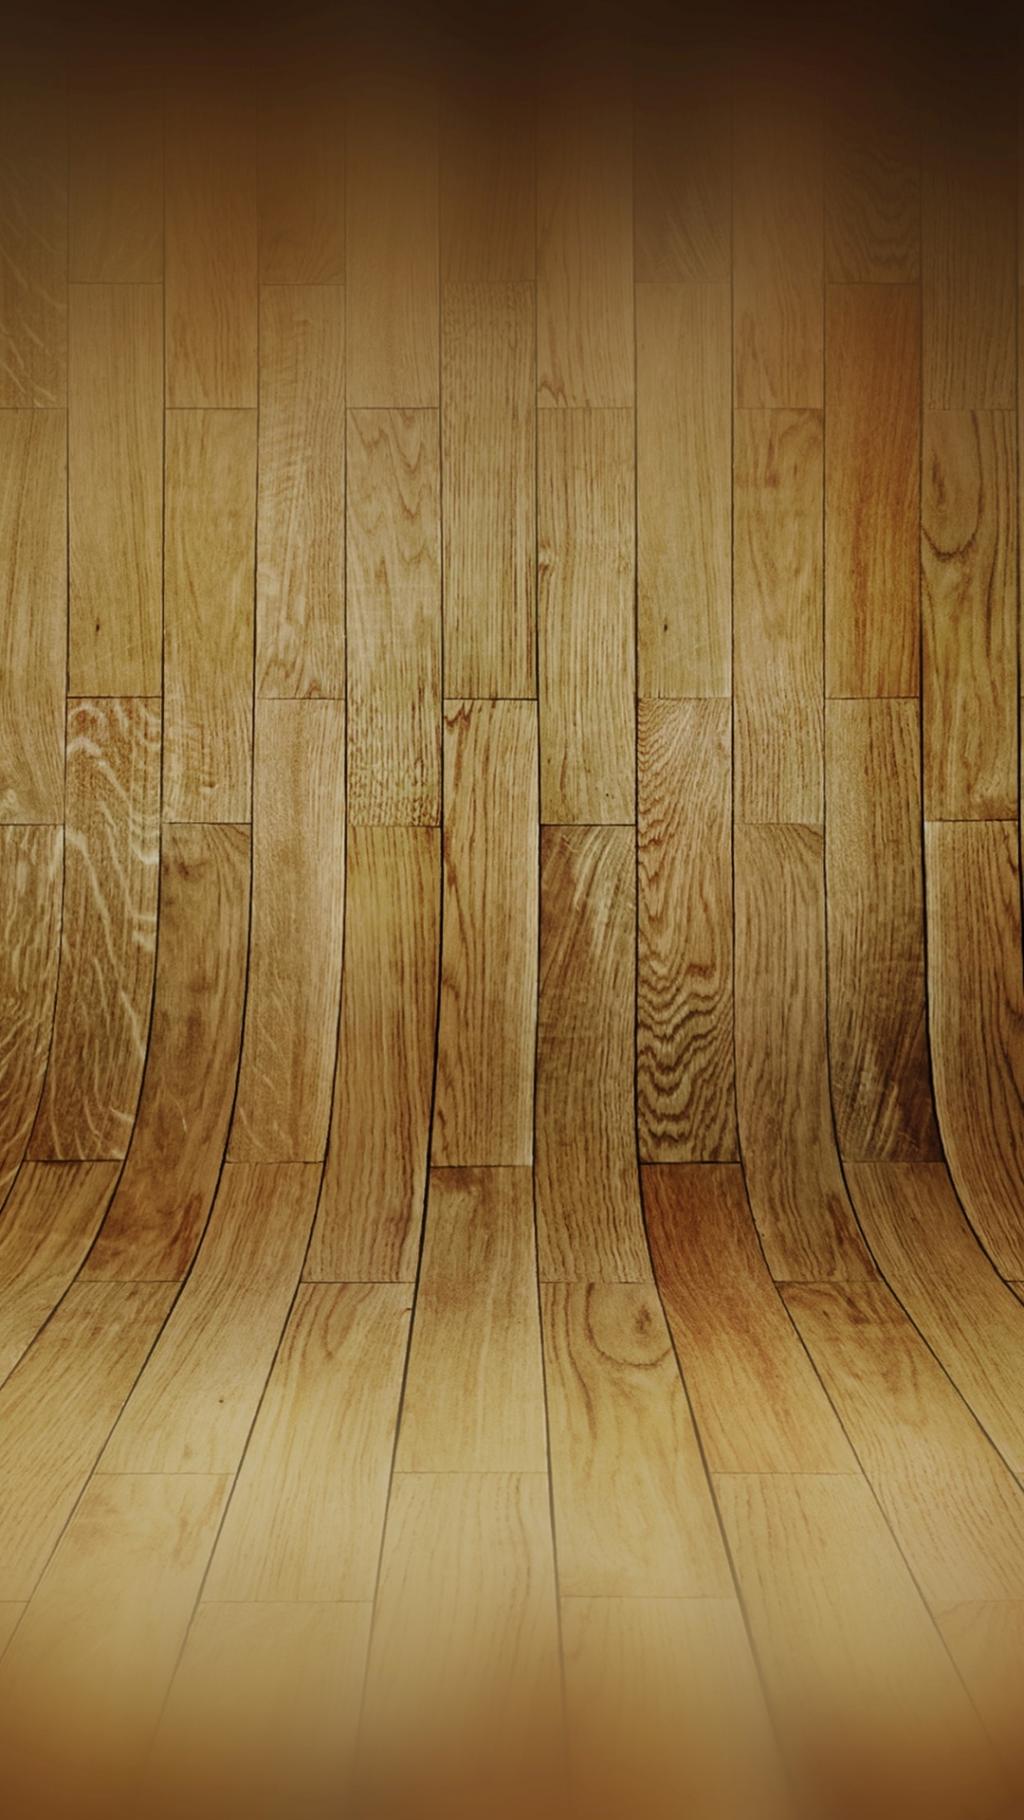 弯曲的木地板模式iPhone 6+高清壁纸